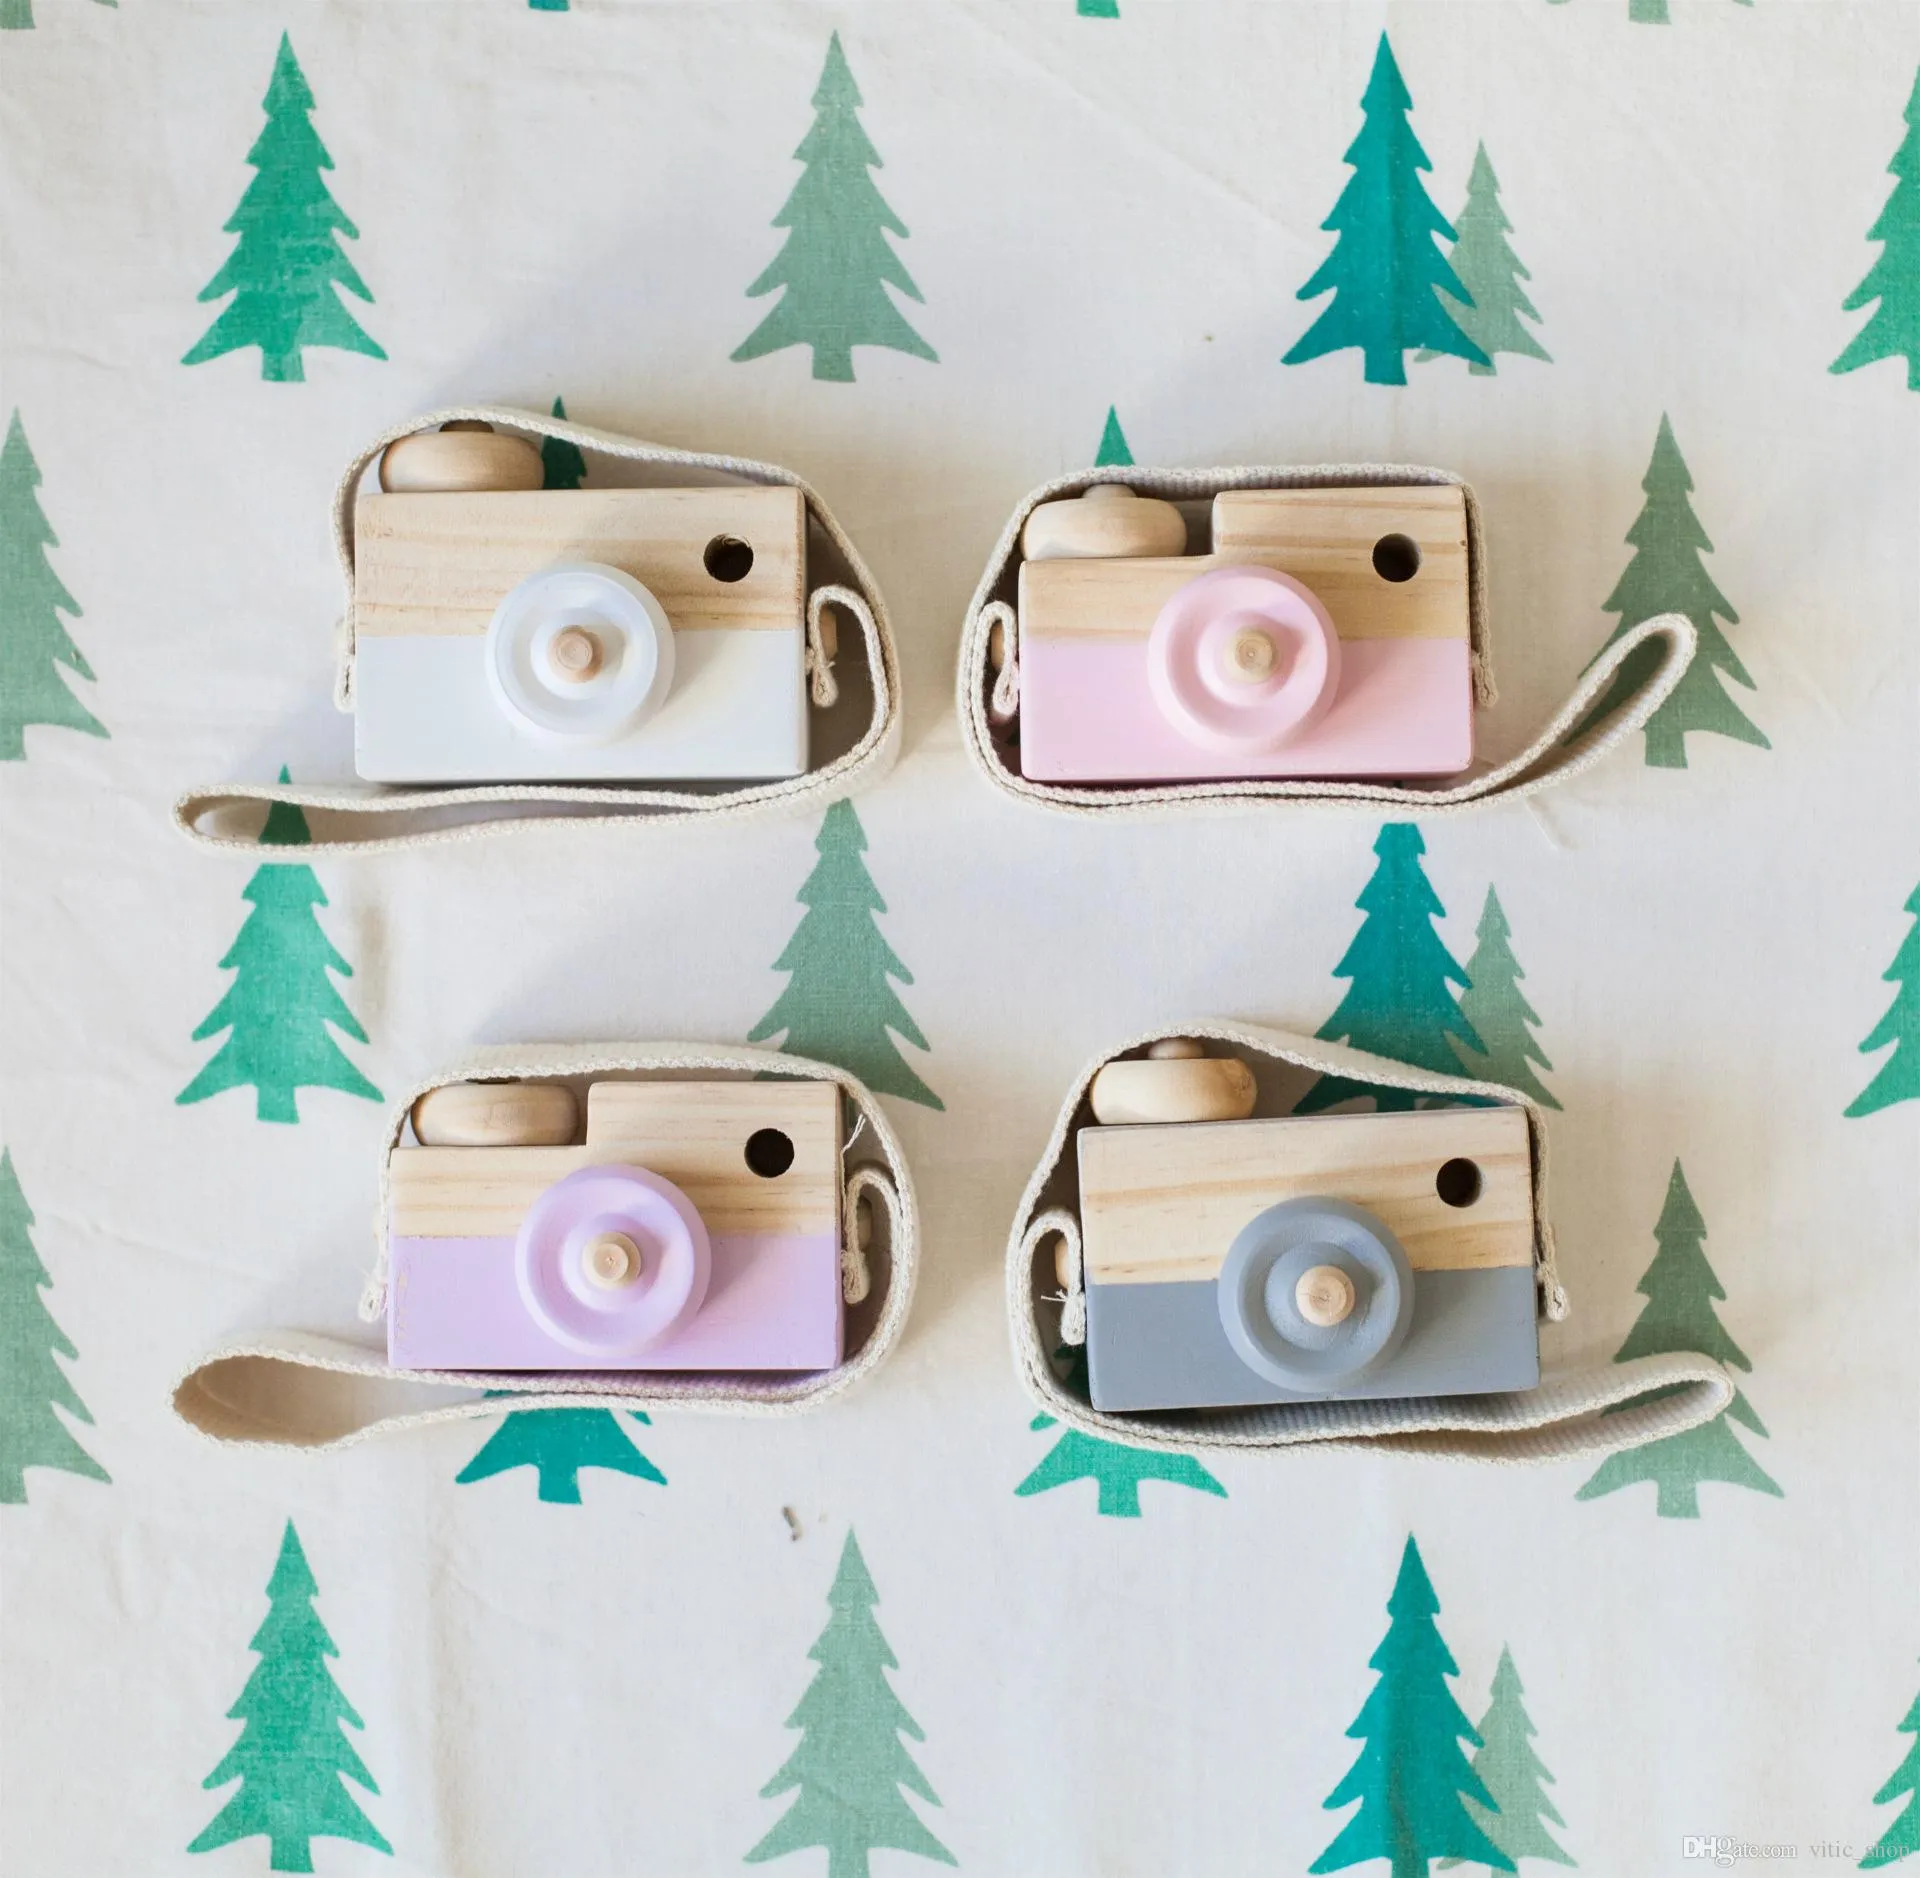 En bois mini-caméra jouet nouveauté articles bébé enfants couche suspendus